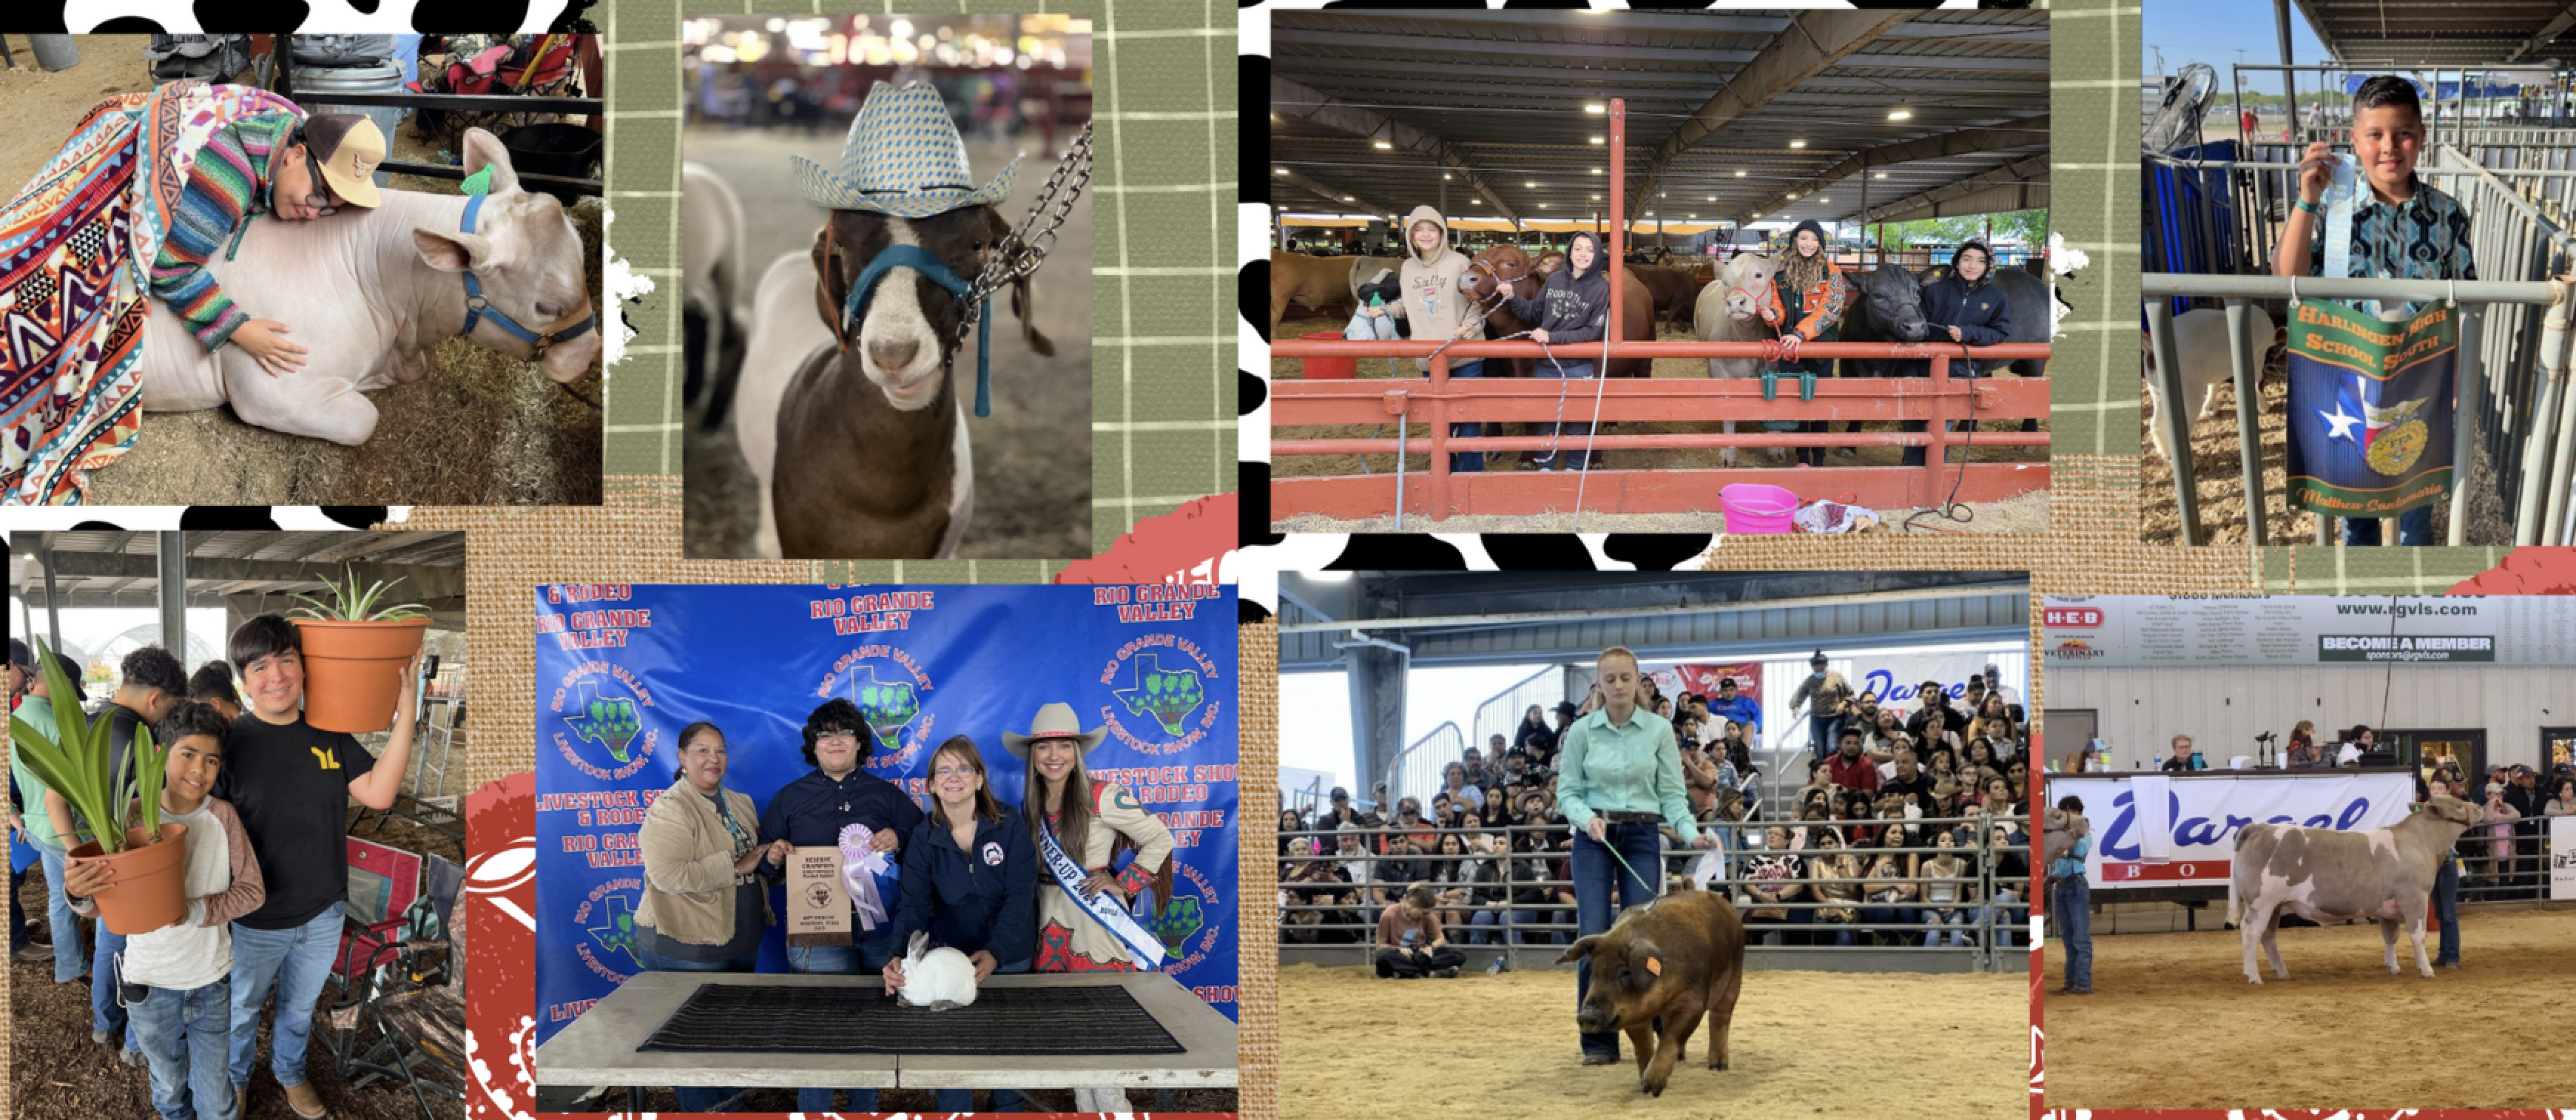 HCISD FFA members excel at Rio Grande Valley Livestock Show